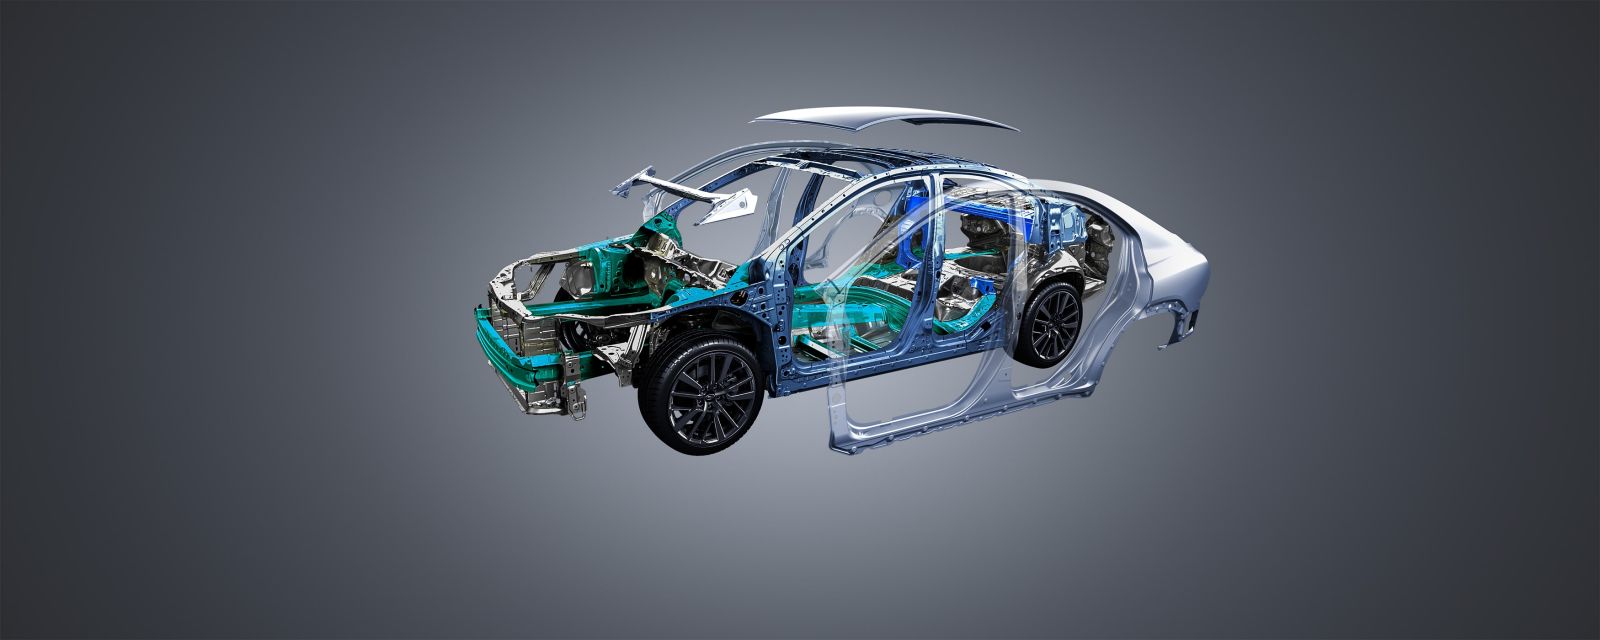 Hệ khung gầm toàn cầu Subaru Global Platform được trang bị trên Subaru WRX